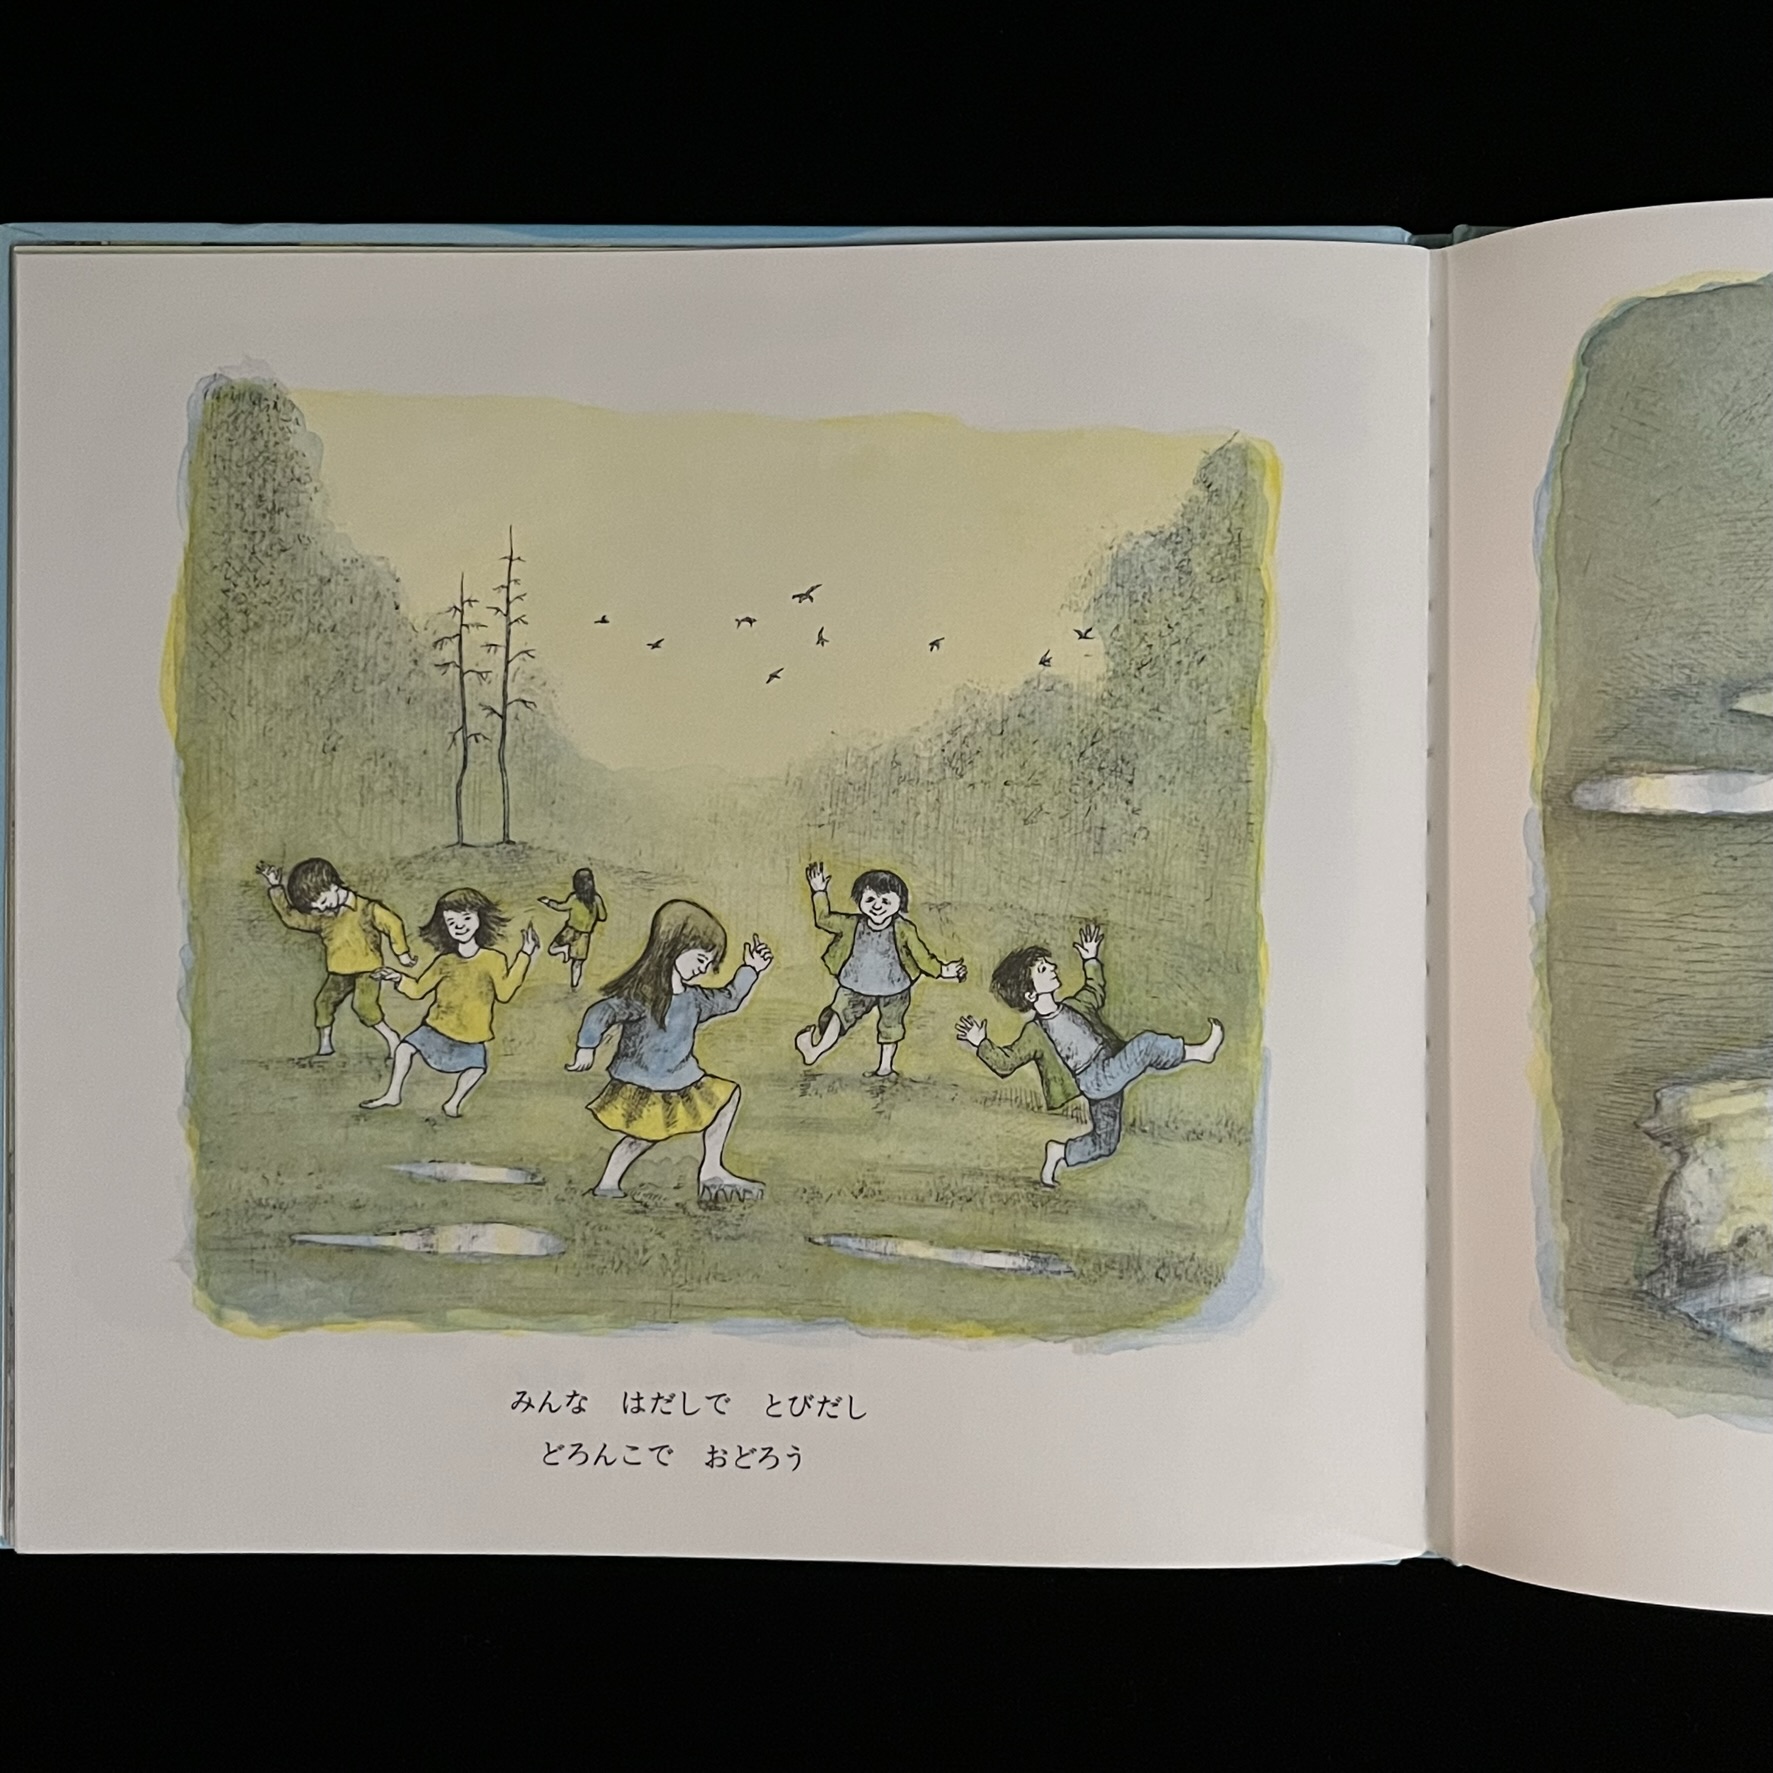 本の中のページの写真。子どもたちが外にでて水たまりのある泥の上で元気にはしゃいでいる